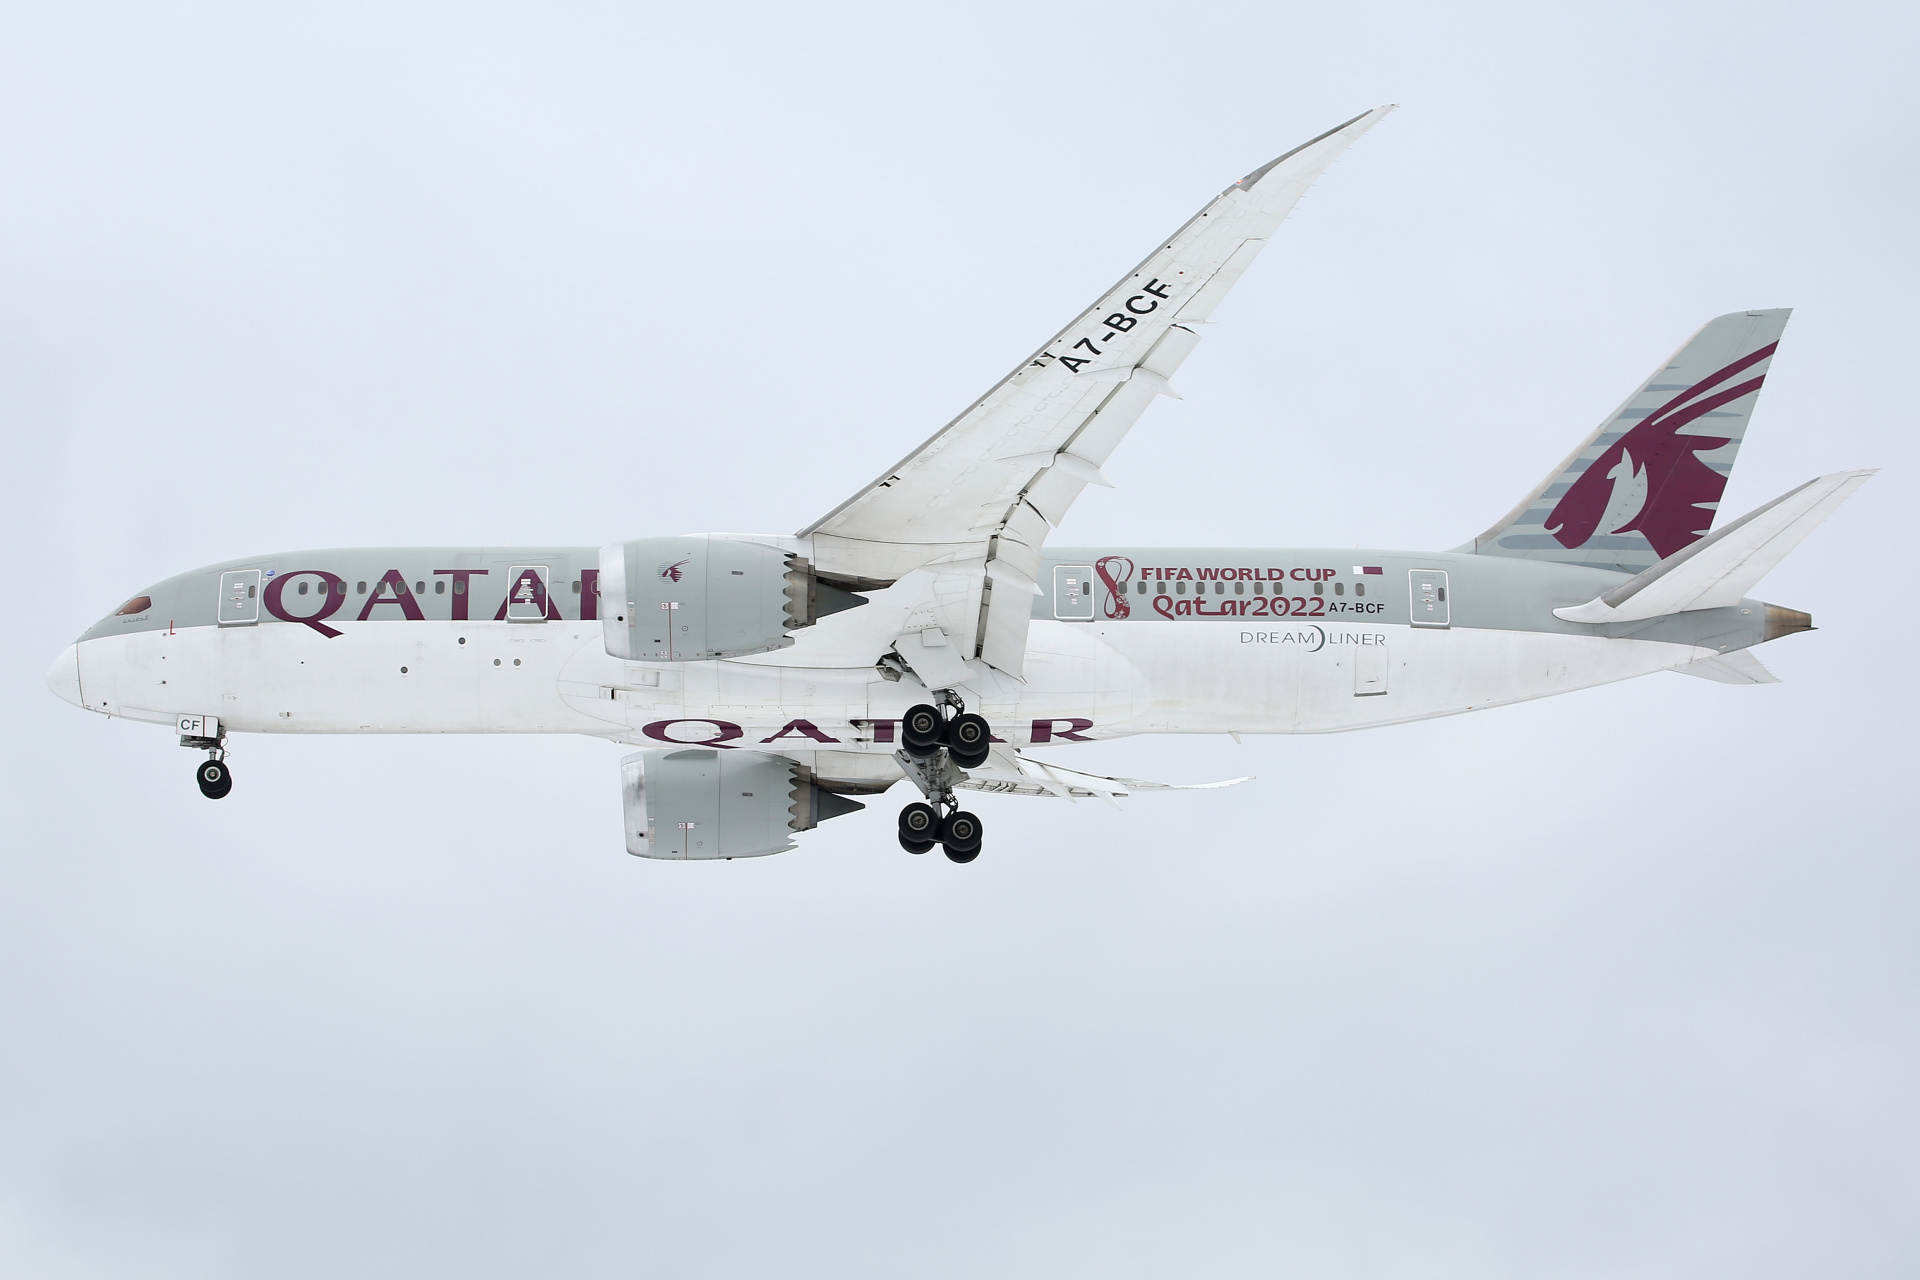 A7-BCF (FIFA World Cup Qatar 2022 livery) (Aircraft » EPWA Spotting » Boeing 787-8 Dreamliner » Qatar Airways)